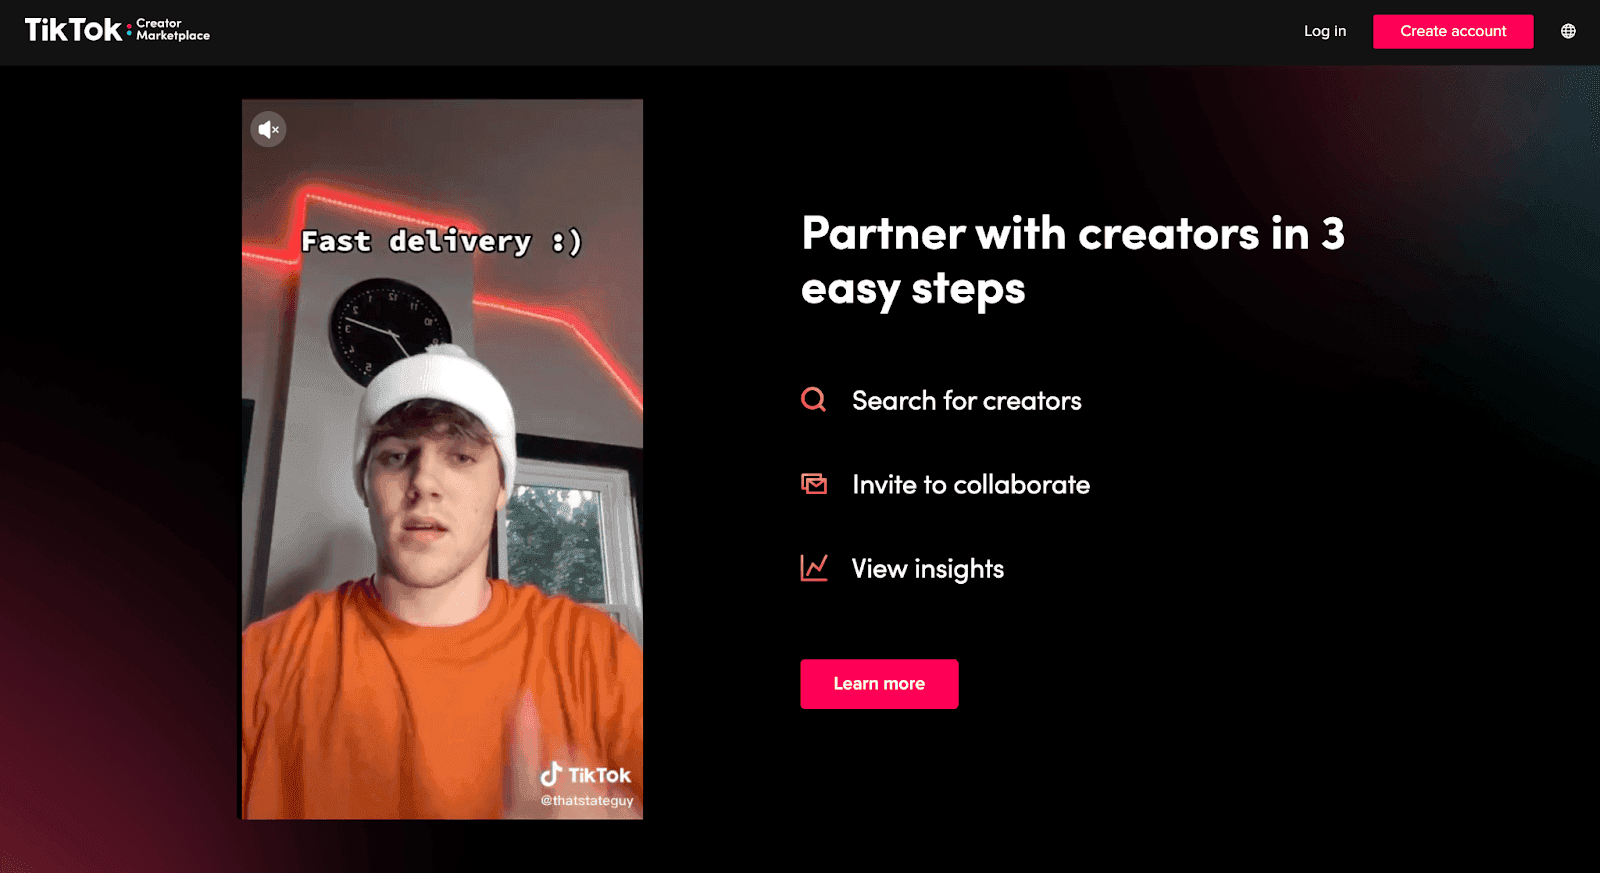 TikTok creator partnerships